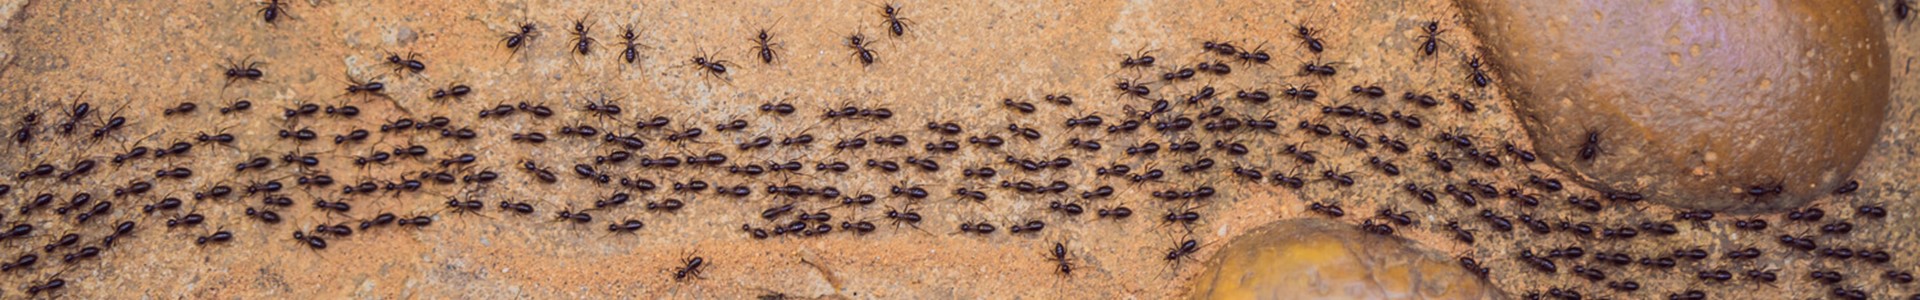 Undgå myrer i sommersæsonen